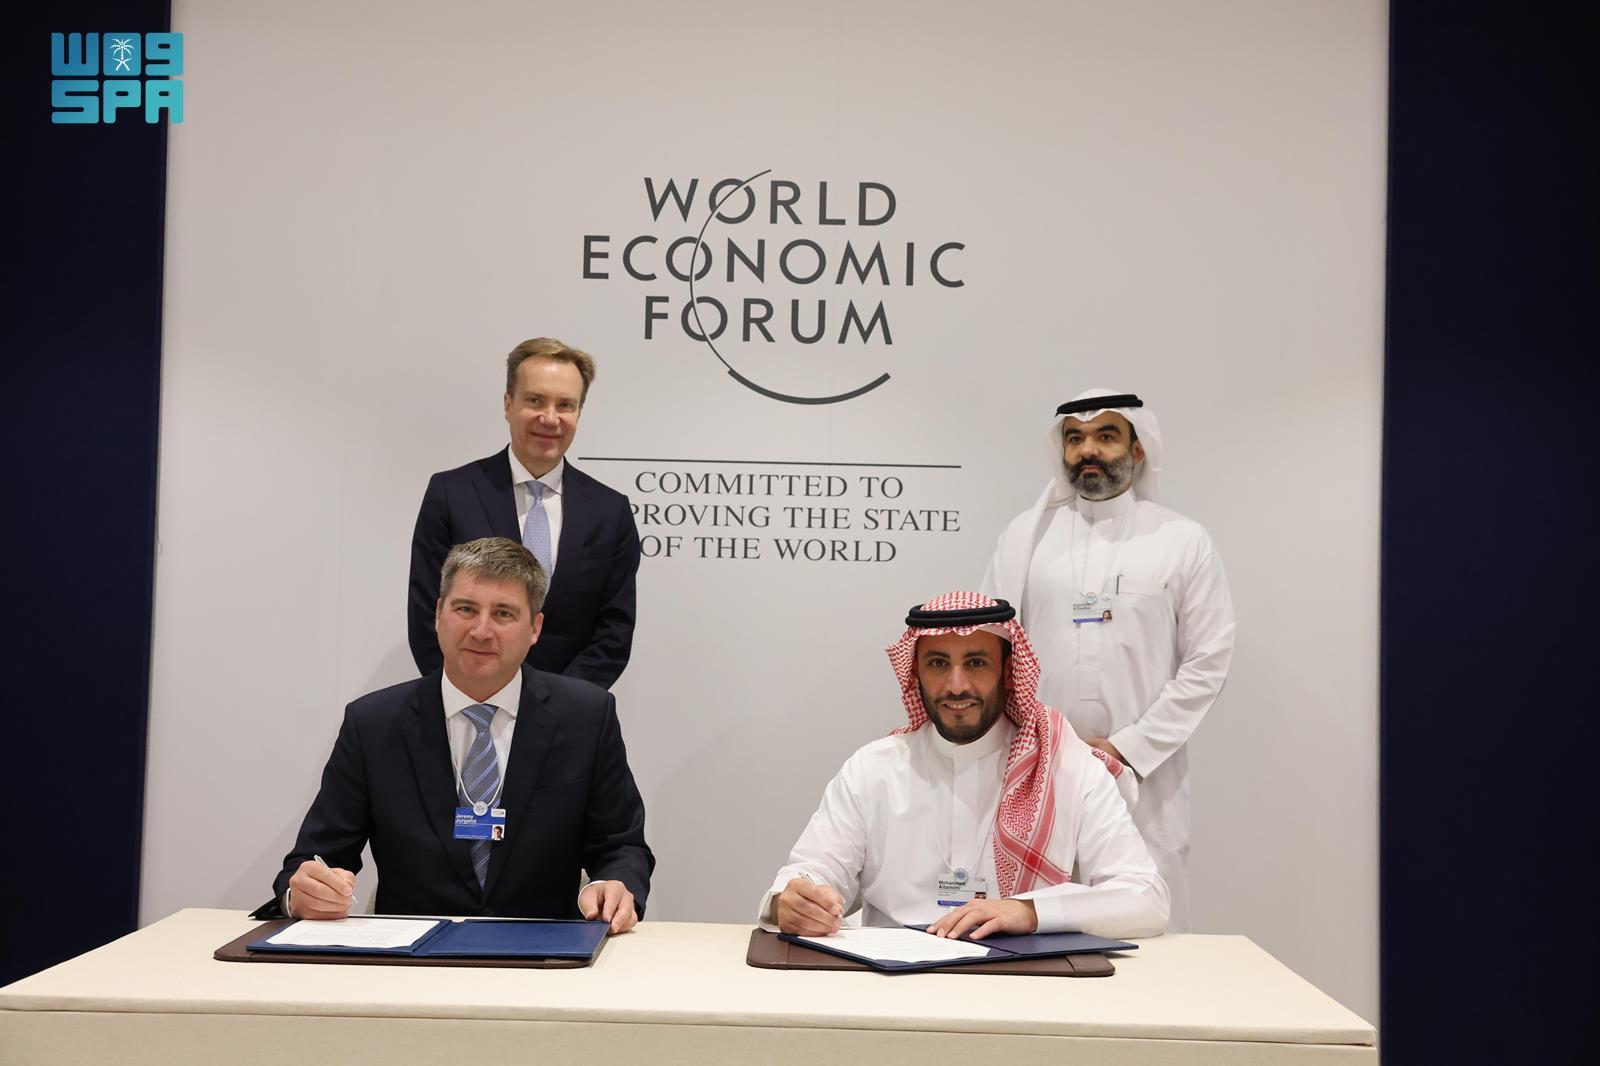 وكالة الفضاء السعودية والمنتدى الاقتصادي العالمي يعقدان شراكة لإنشاء مركز لمستقبل الفضاء